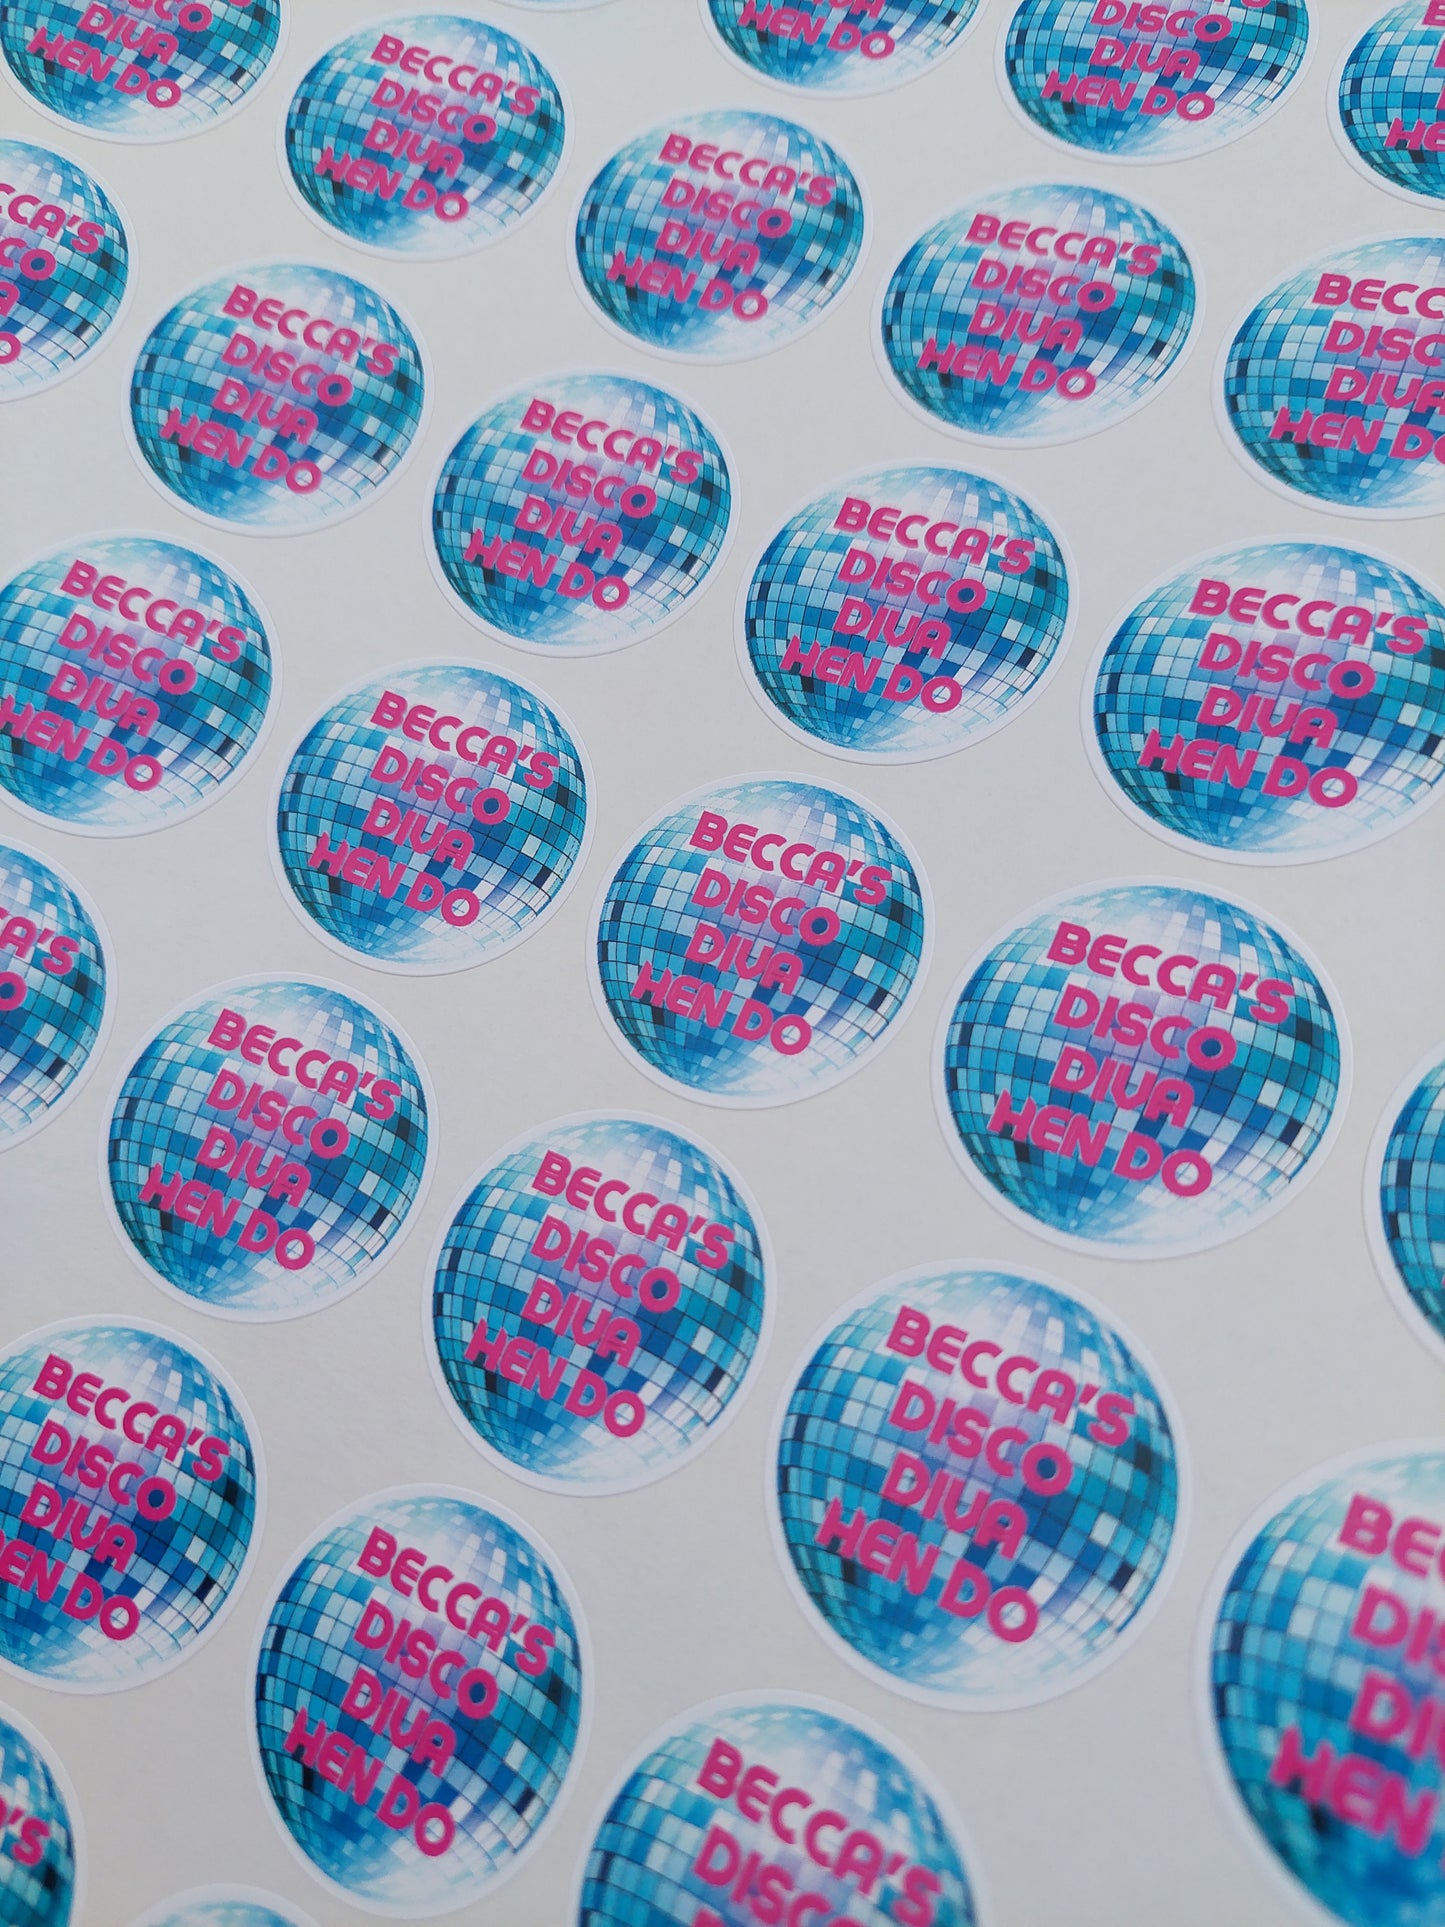 Disco Diva Stickers | Various Sizes | Disco Party Supplies | Disco Theme Party